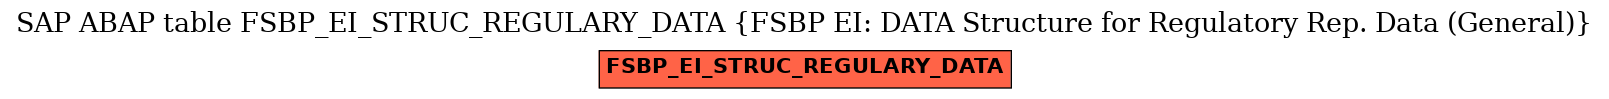 E-R Diagram for table FSBP_EI_STRUC_REGULARY_DATA (FSBP EI: DATA Structure for Regulatory Rep. Data (General))